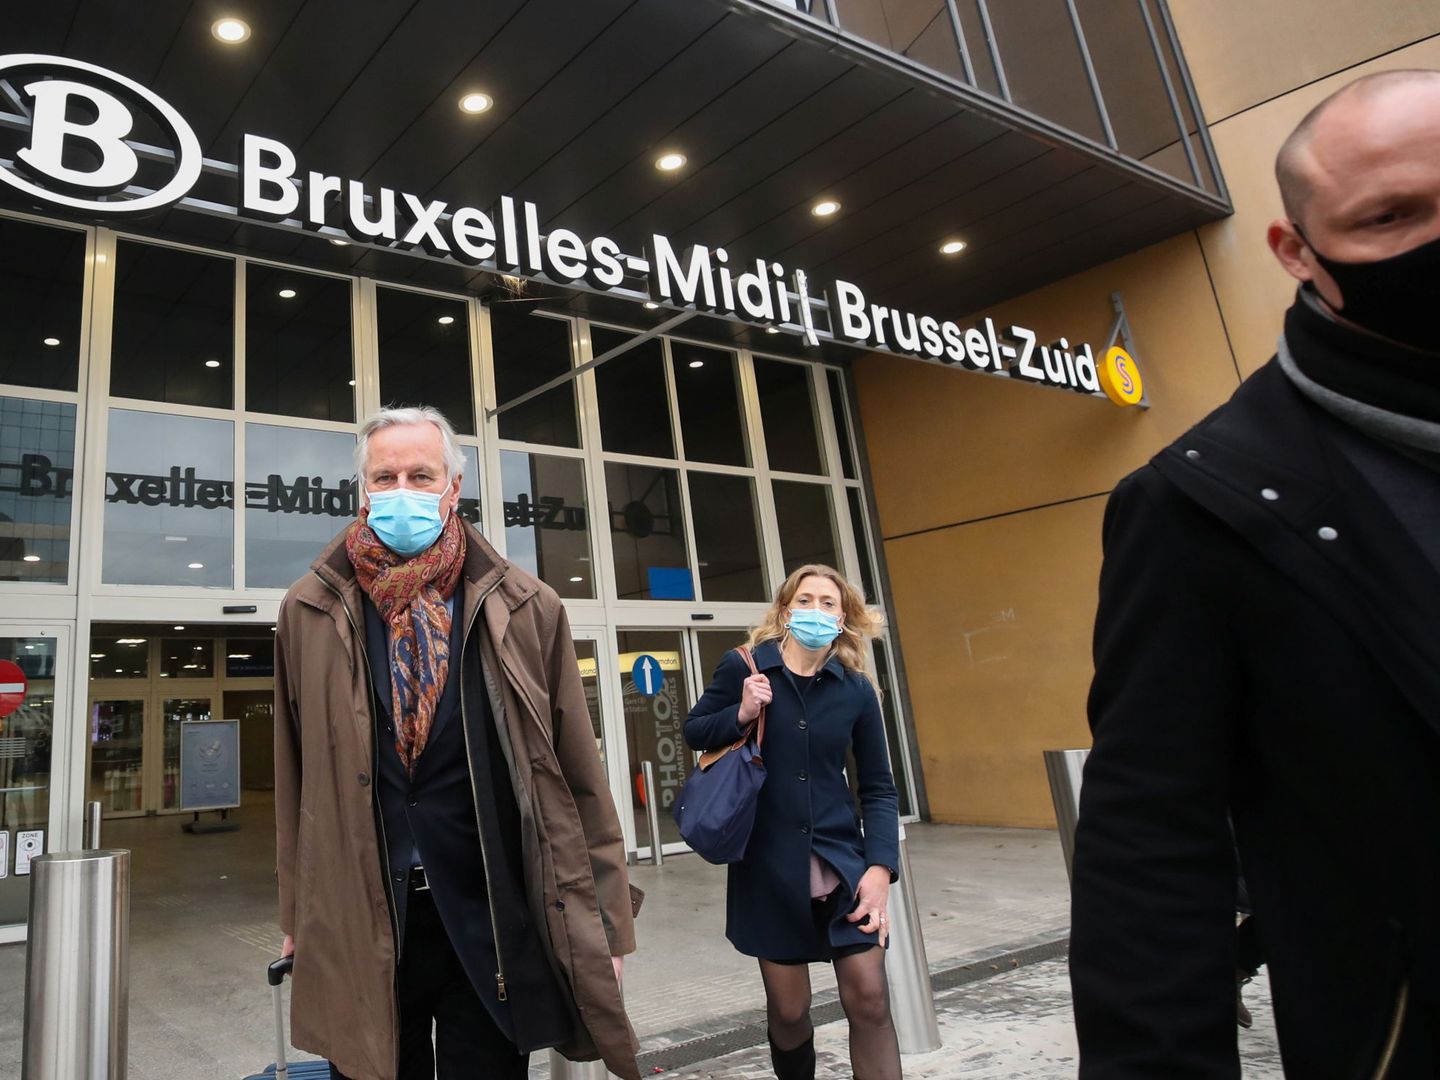 El negociador europeo a su regreso a Bruselas tras una semana de negociaciones en Londres. (Reuters)